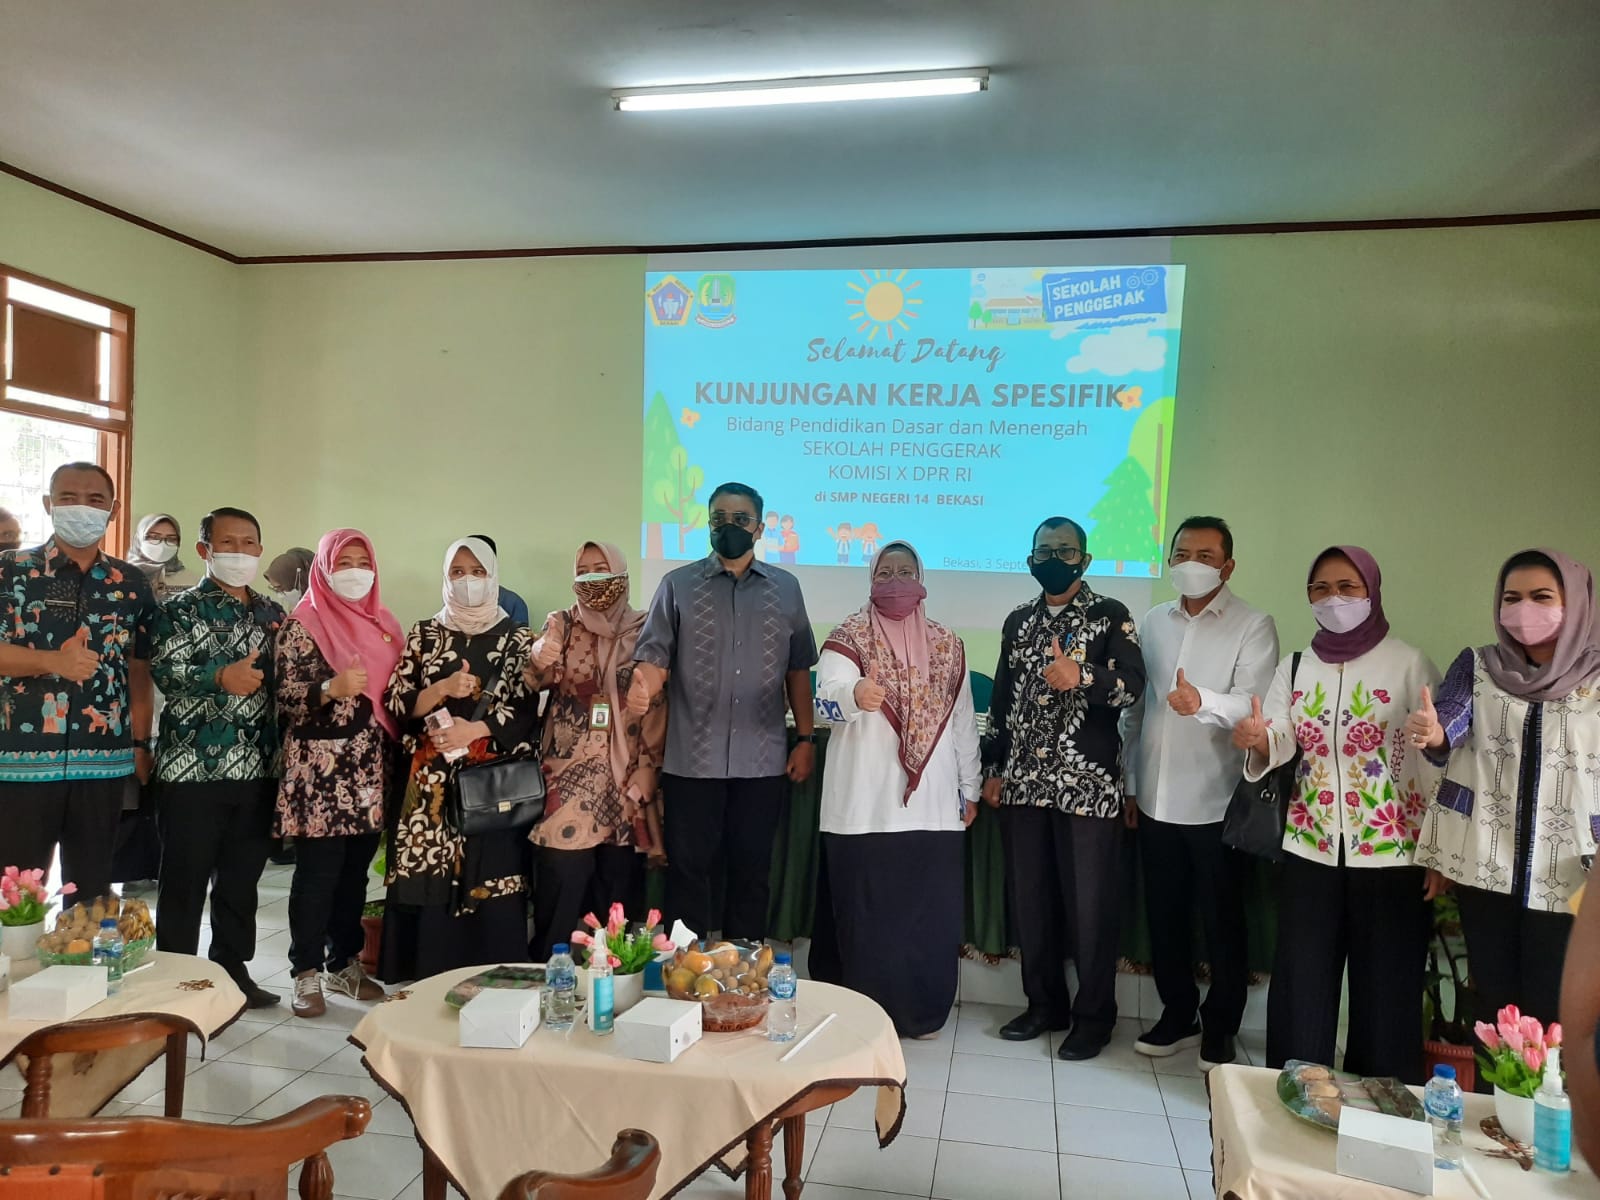 Komisi X DPR RI Kunjungi Kota Bekasi, Cek Sekolah Penggerak